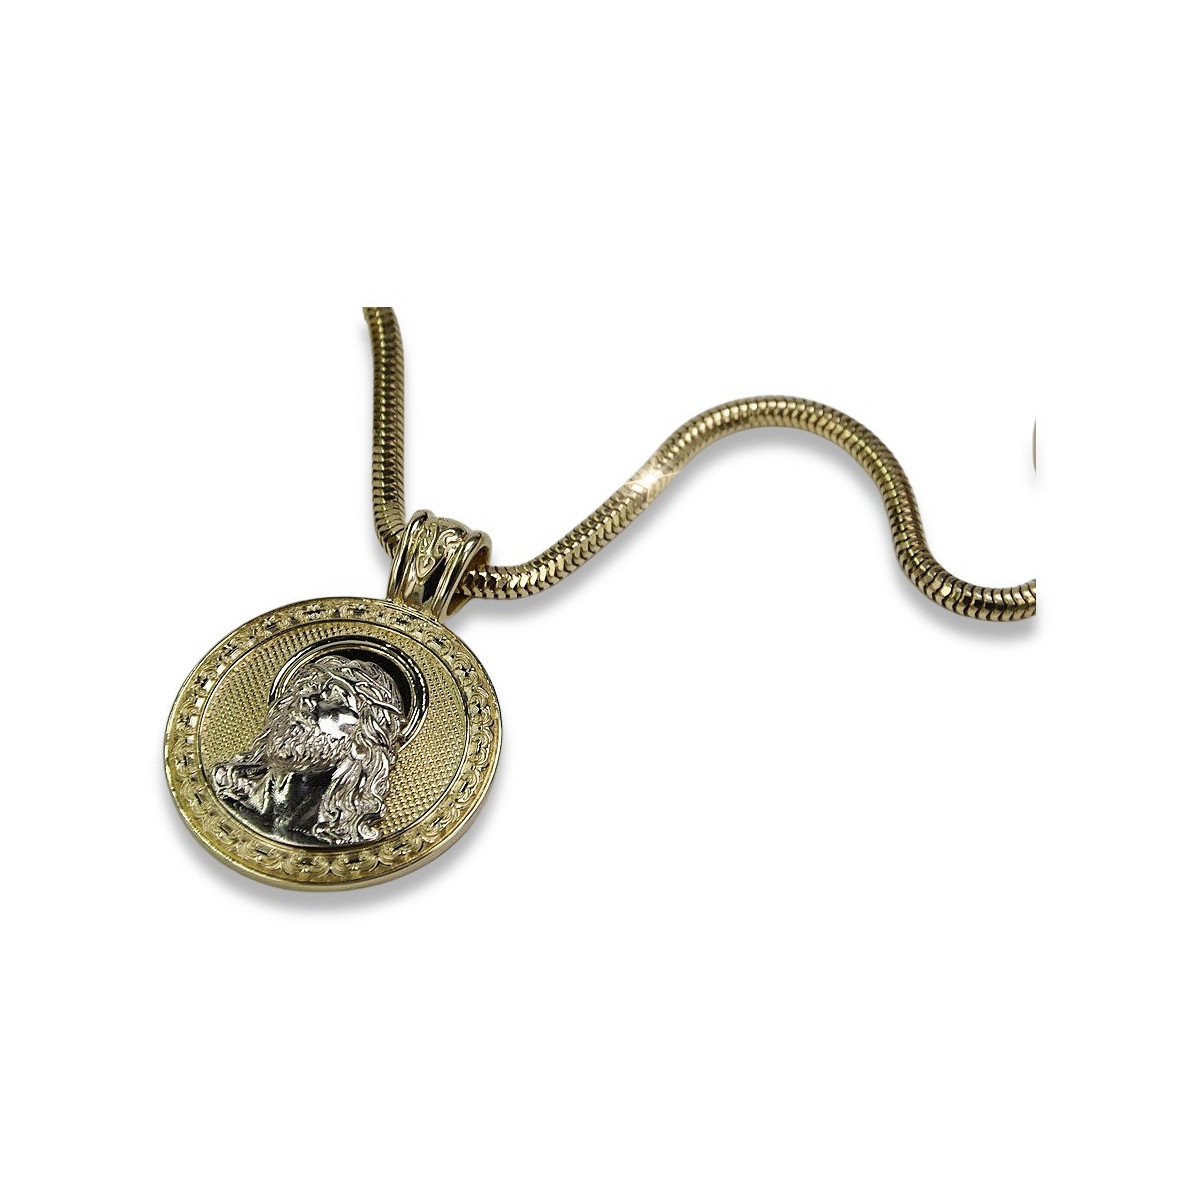 Золотой (серебряный) кулон Jesus & Rope chain (разного веса)